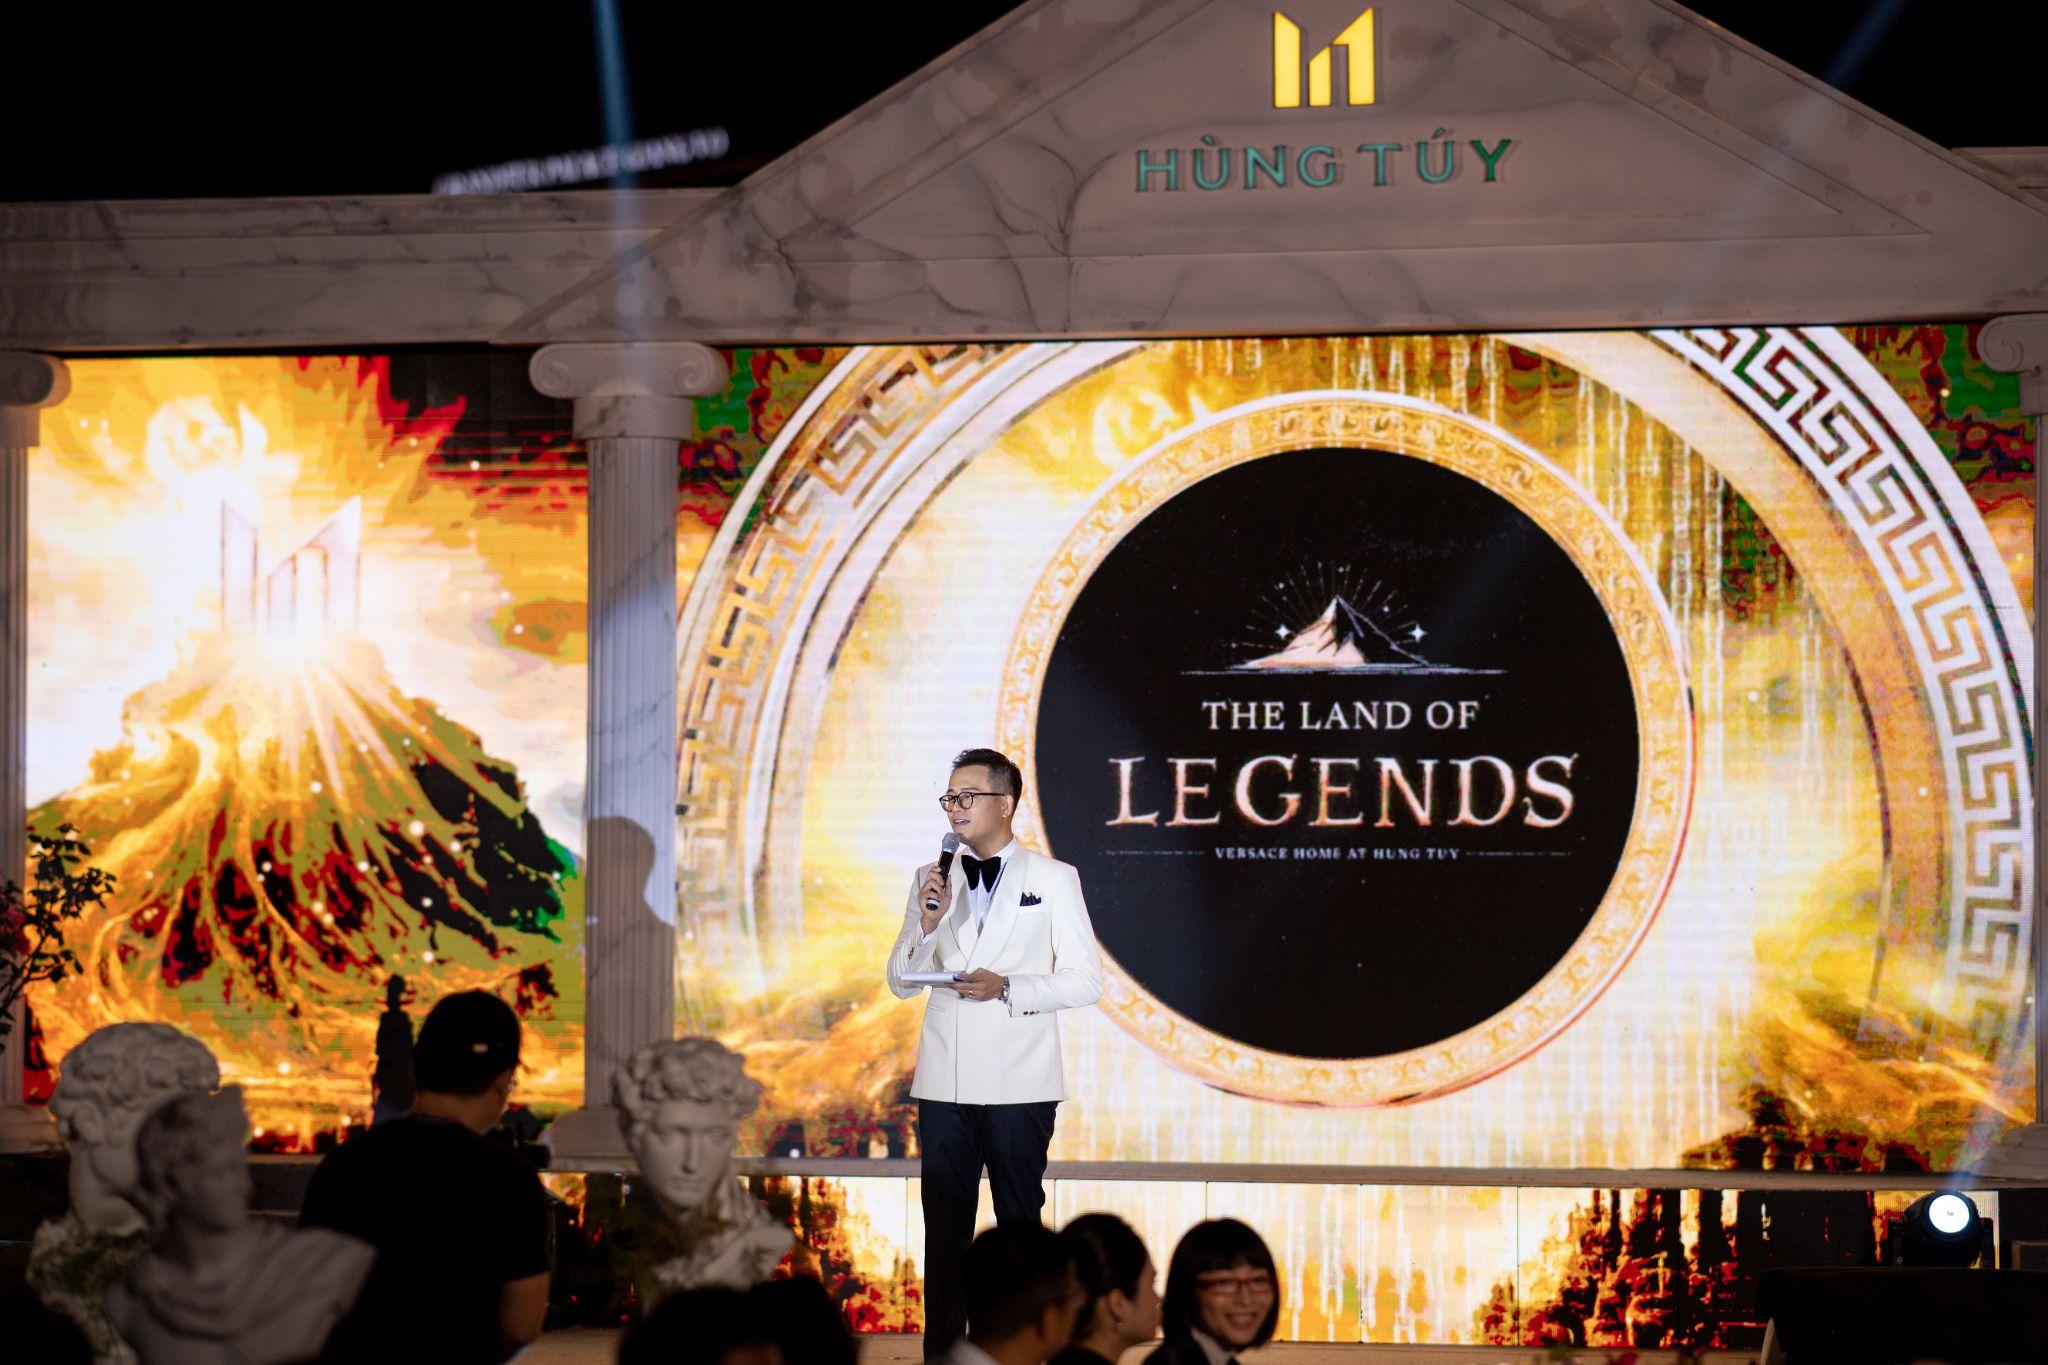 “The Land of Legends”: Khuấy đảo giới nội thất thượng lưu tại Showroom Hùng Túy - 2